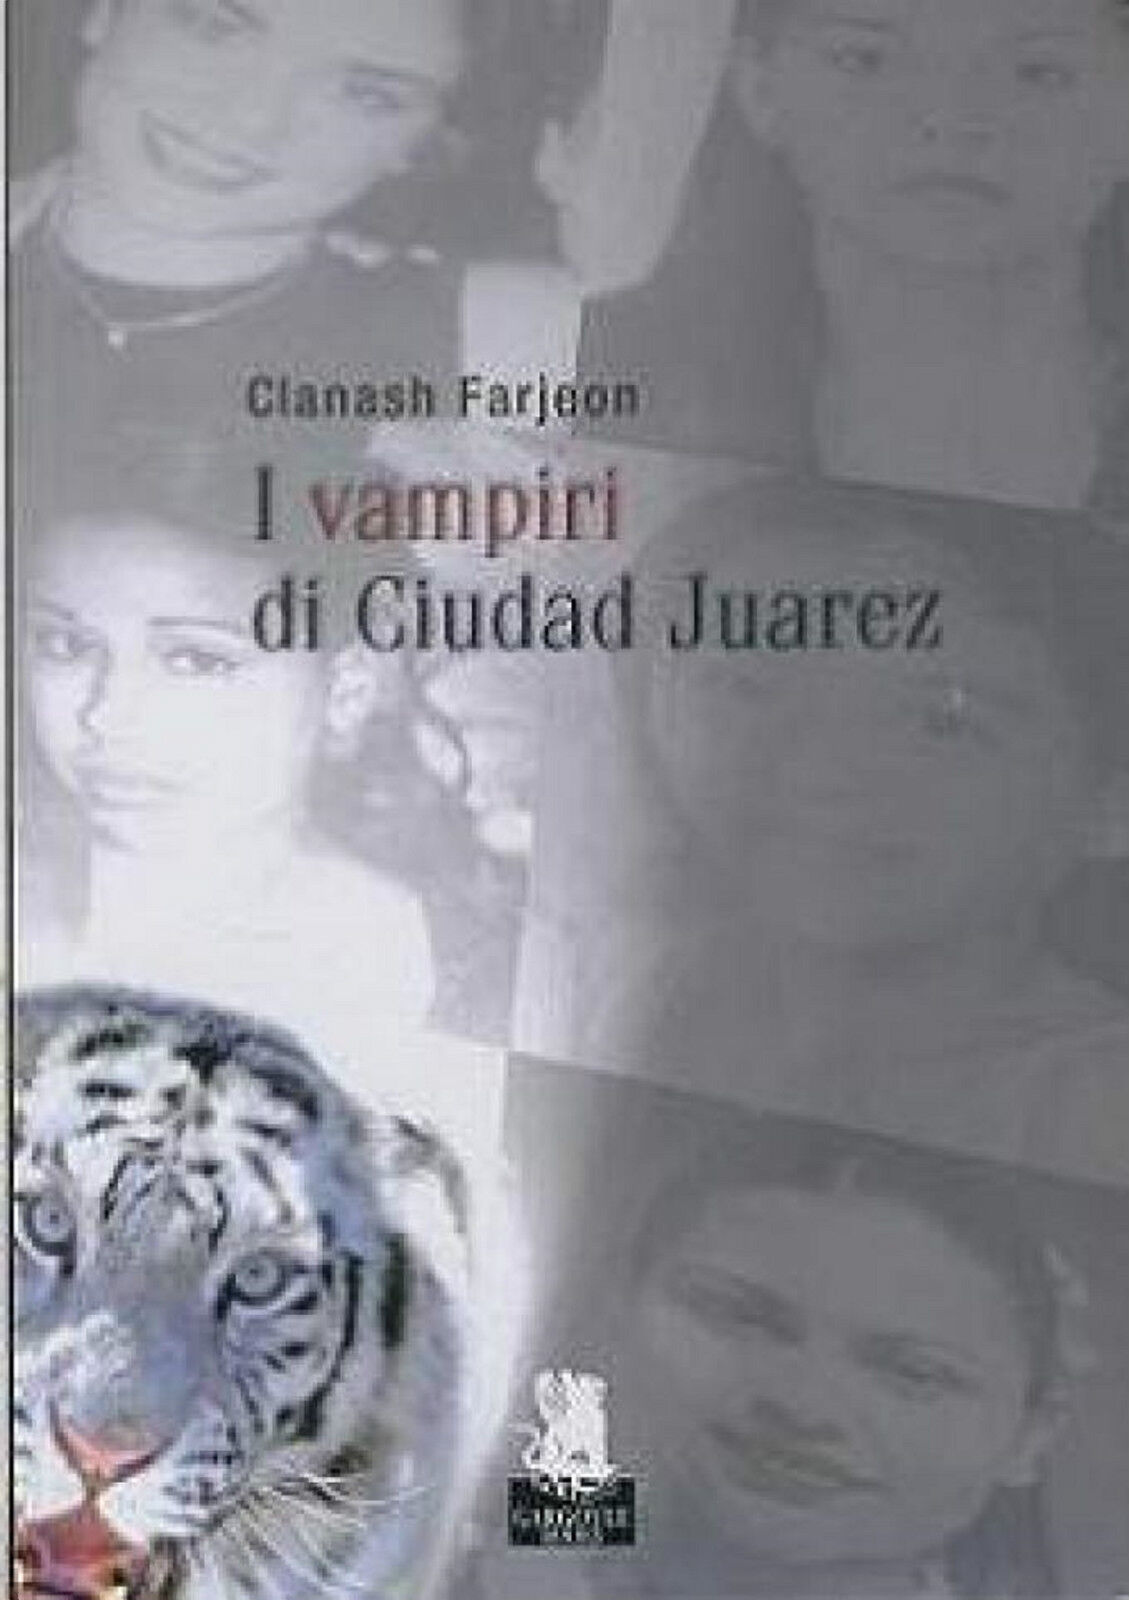  I vampiri di Ciudad Juarez - Clanash Farjeon - Gargoyle - 2010 C libro usato